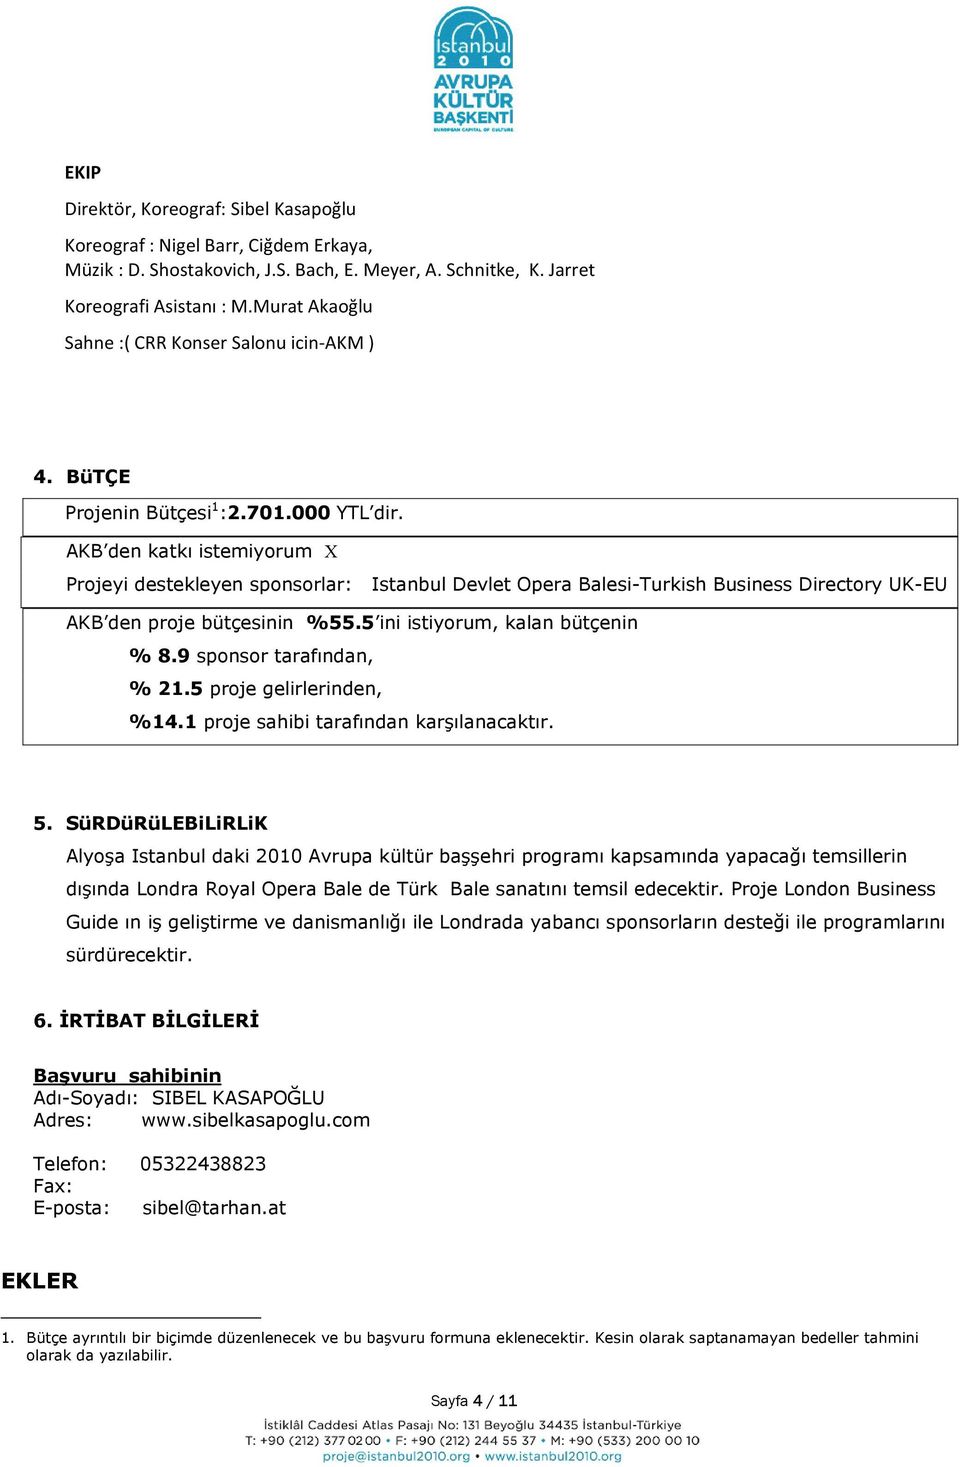 AKB den katkı istemiyorum X Projeyi destekleyen sponsorlar: Istanbul Devlet Opera Balesi-Turkish Business Directory UK-EU AKB den proje bütçesinin %55.5 ini istiyorum, kalan bütçenin % 8.